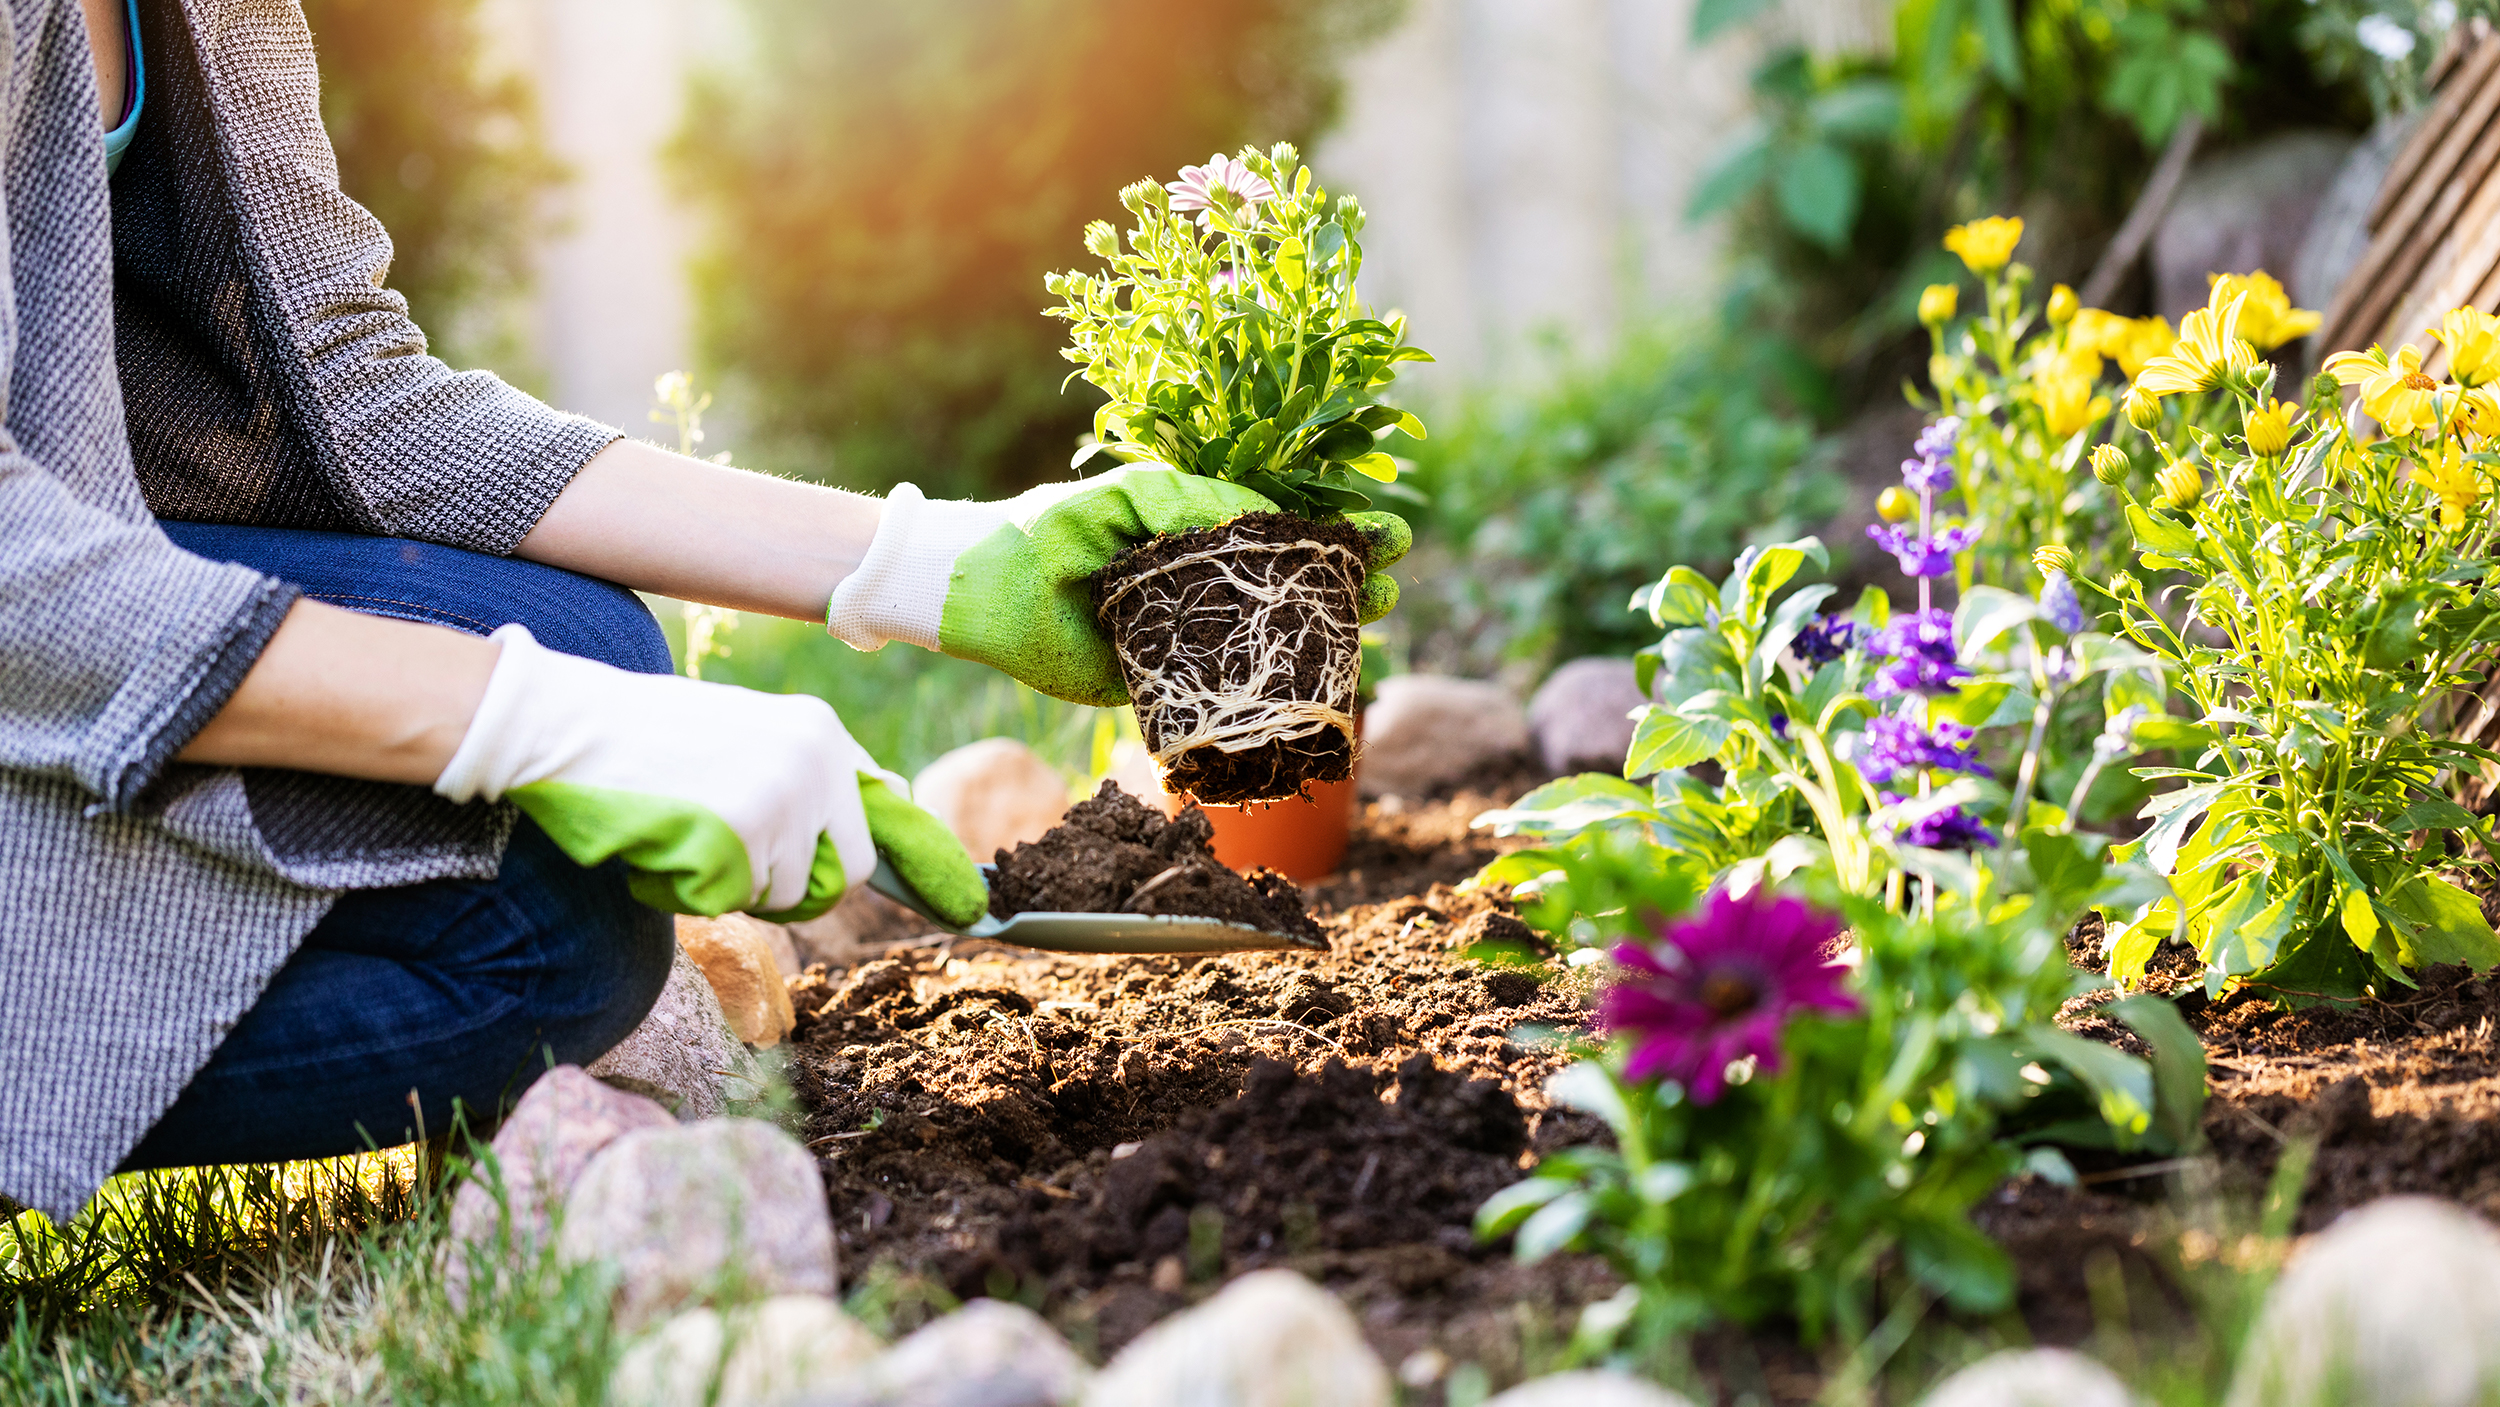 Gardening ideas for beginners | CNN Underscored